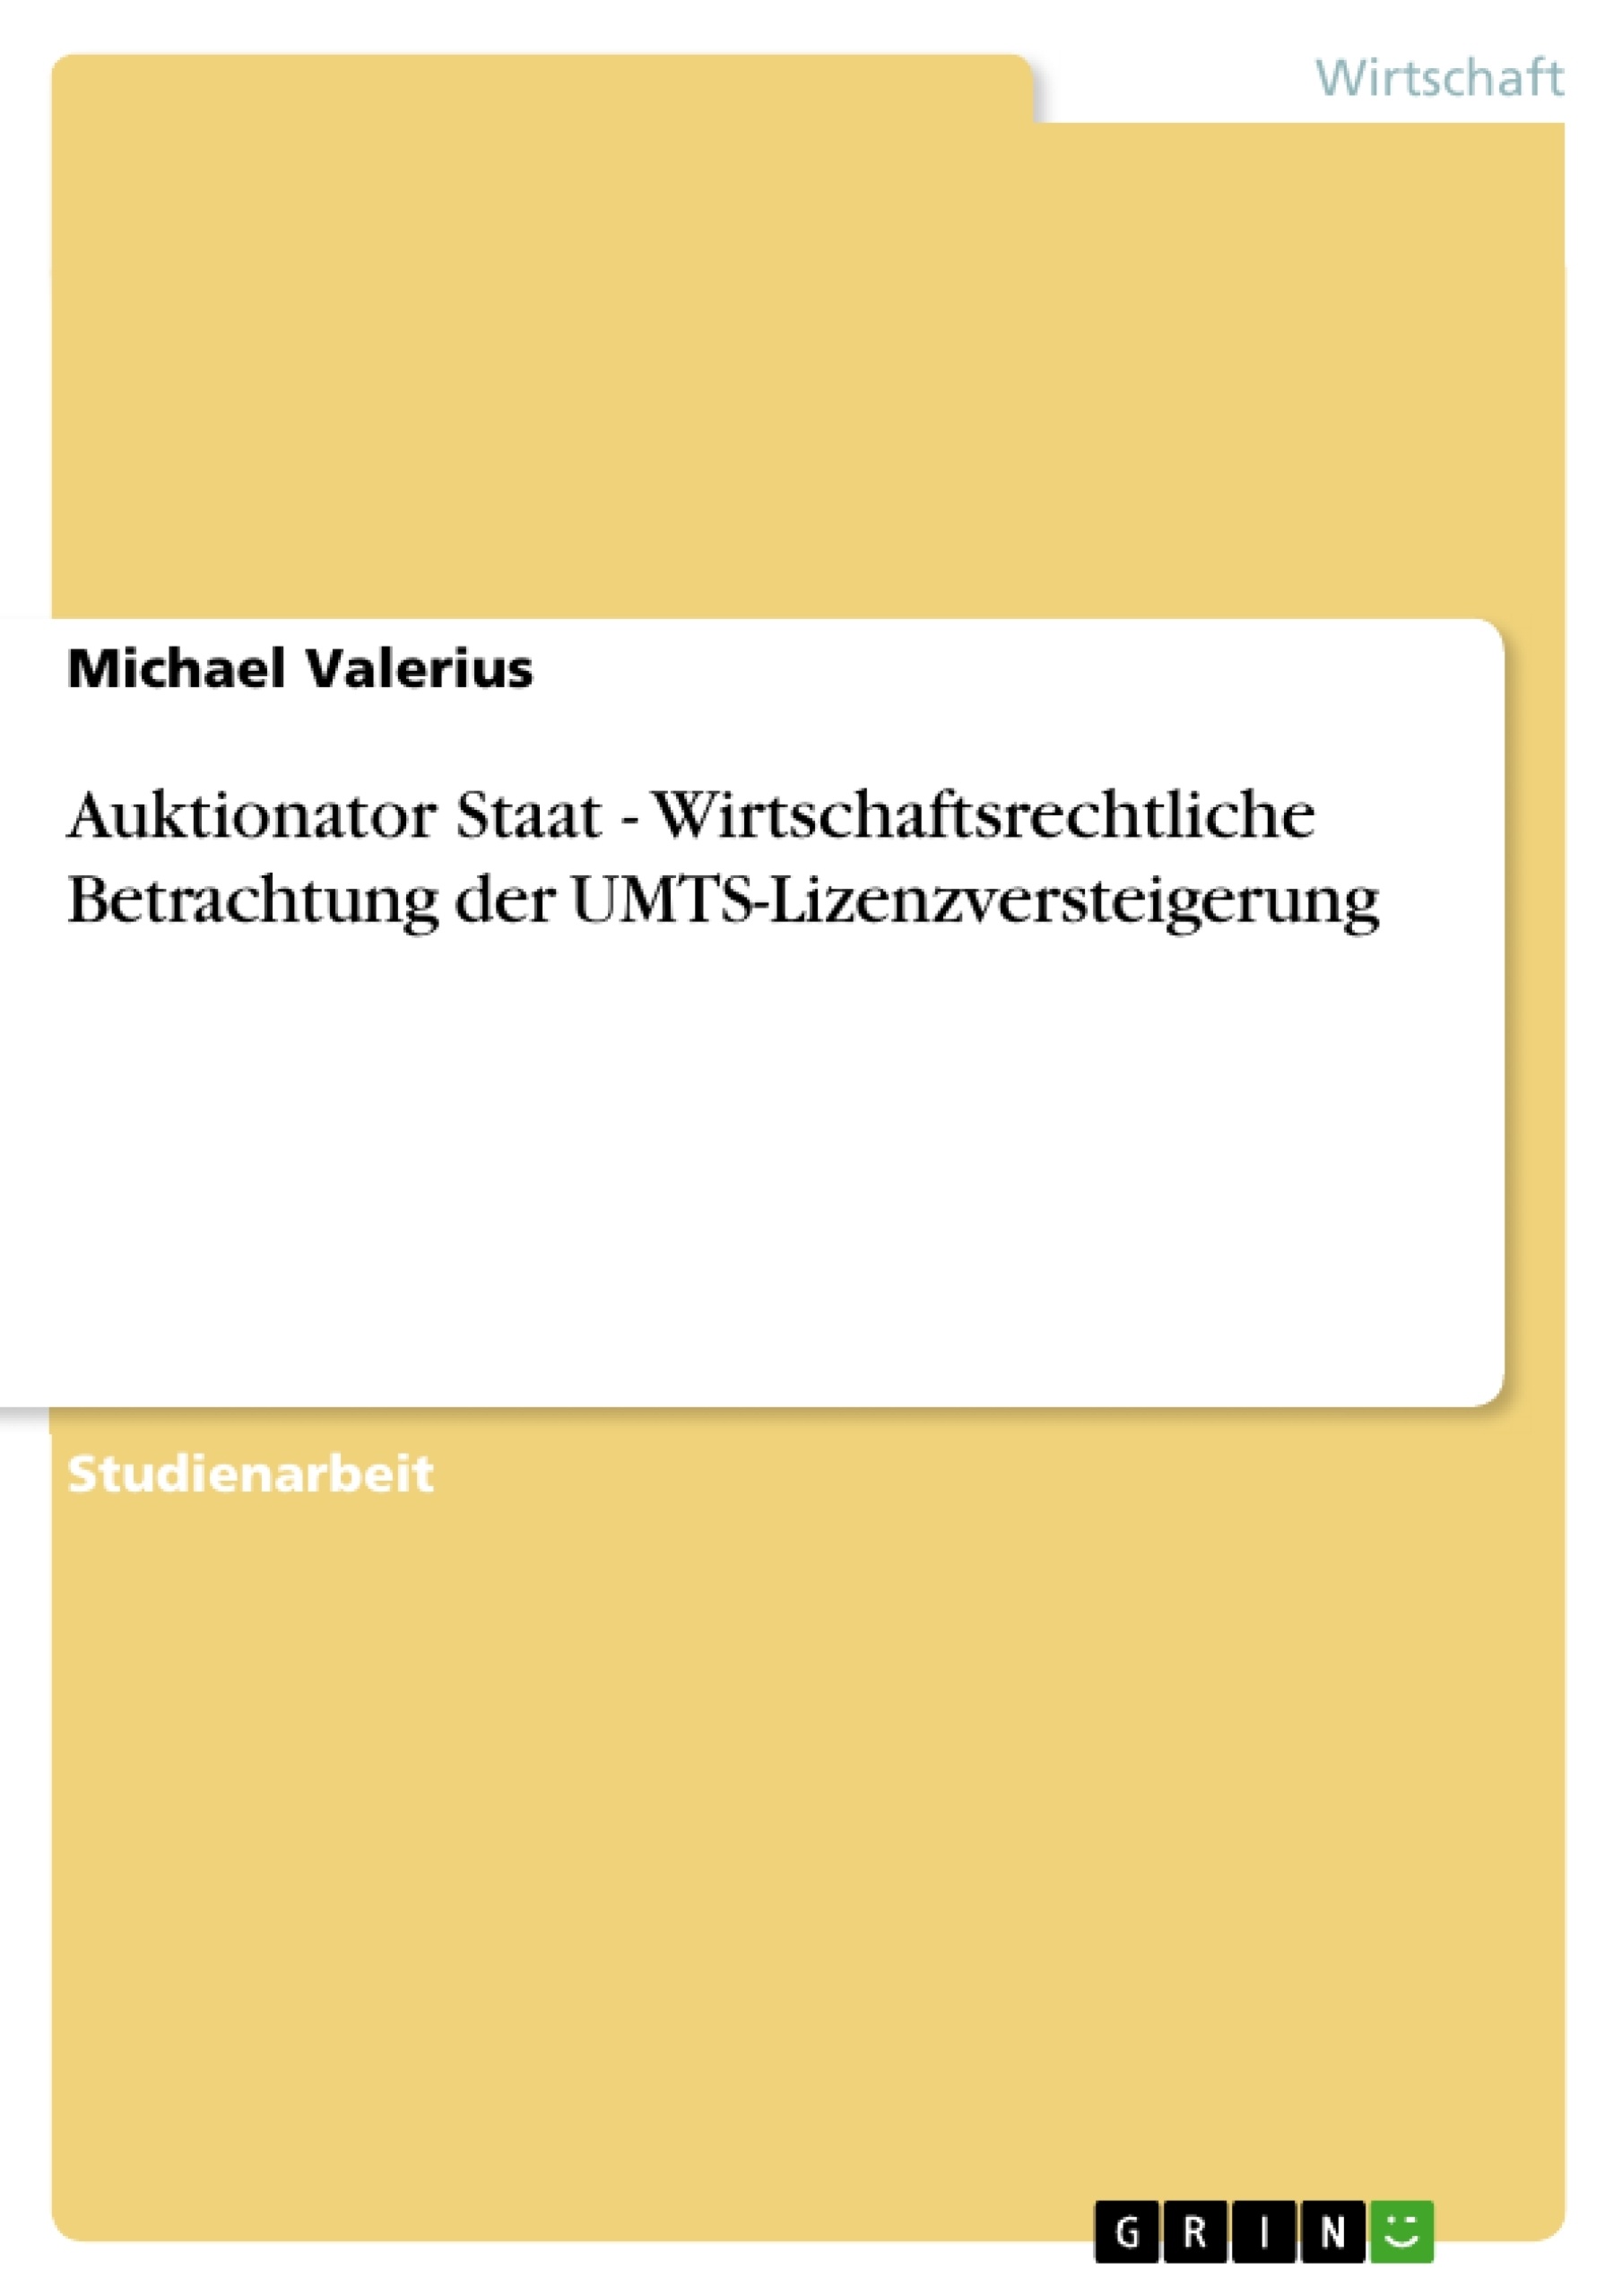 Título: Auktionator Staat - Wirtschaftsrechtliche Betrachtung der UMTS-Lizenzversteigerung